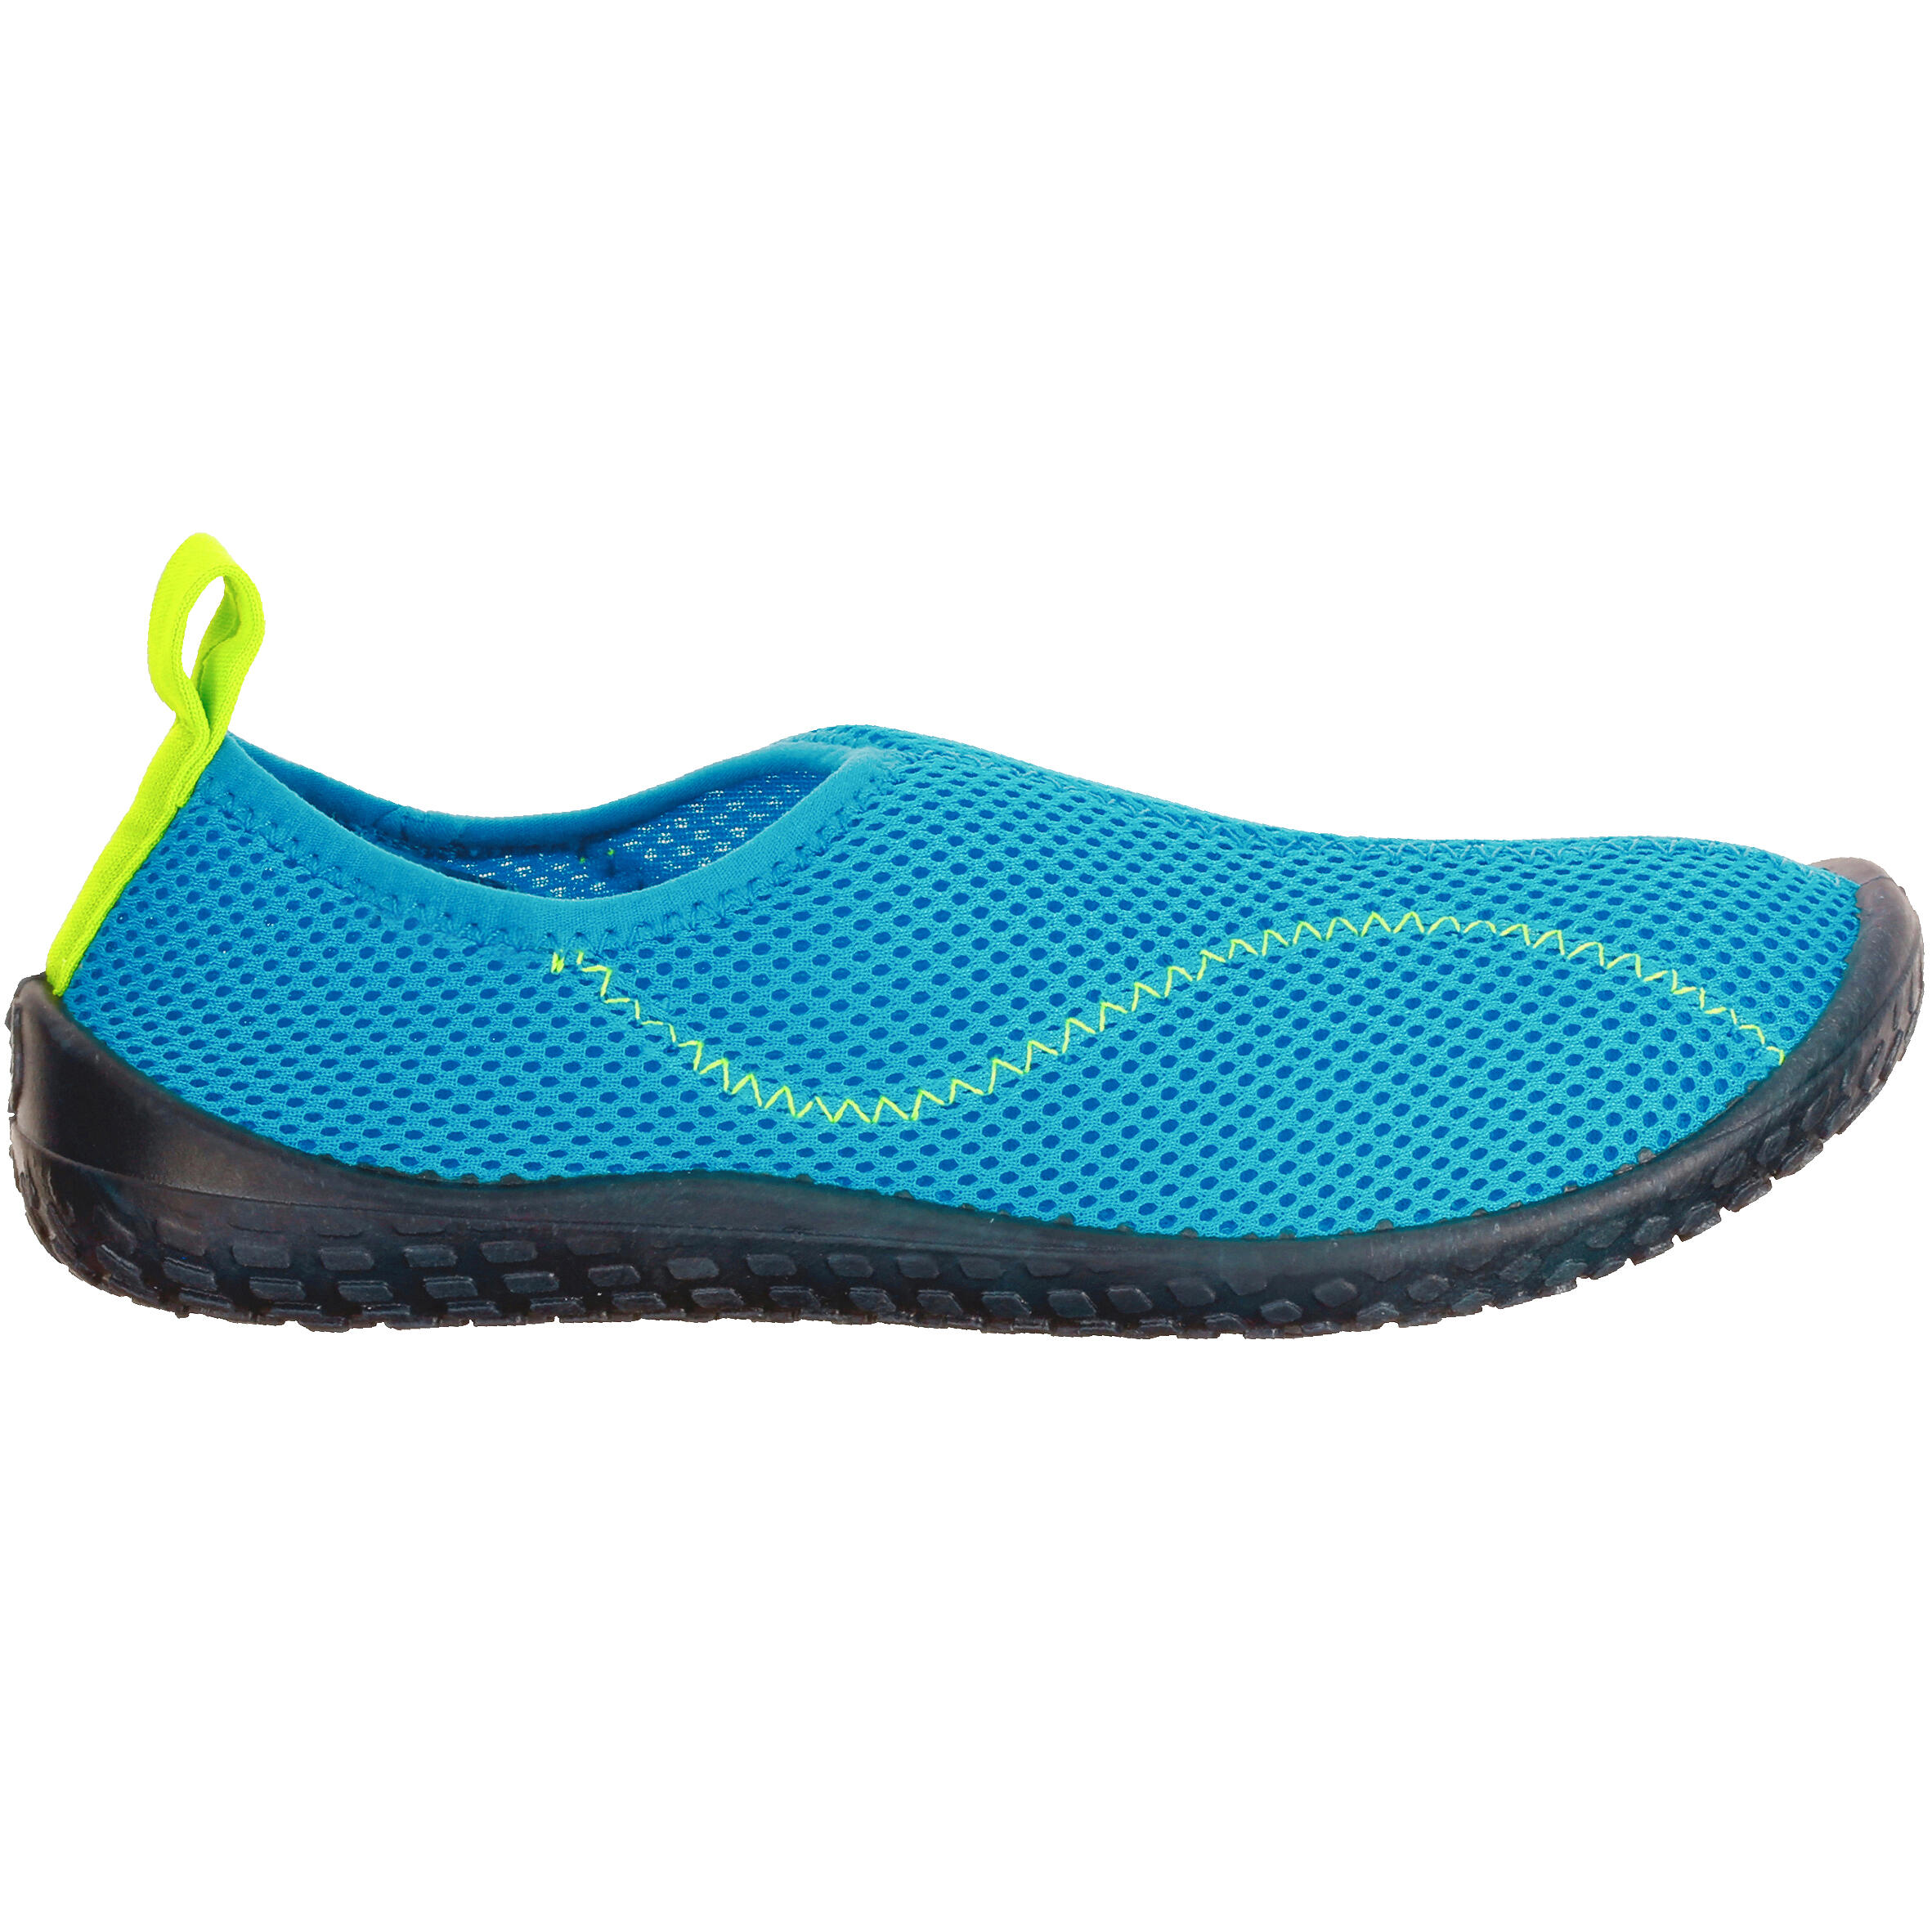 decathlon aqua shoes 100